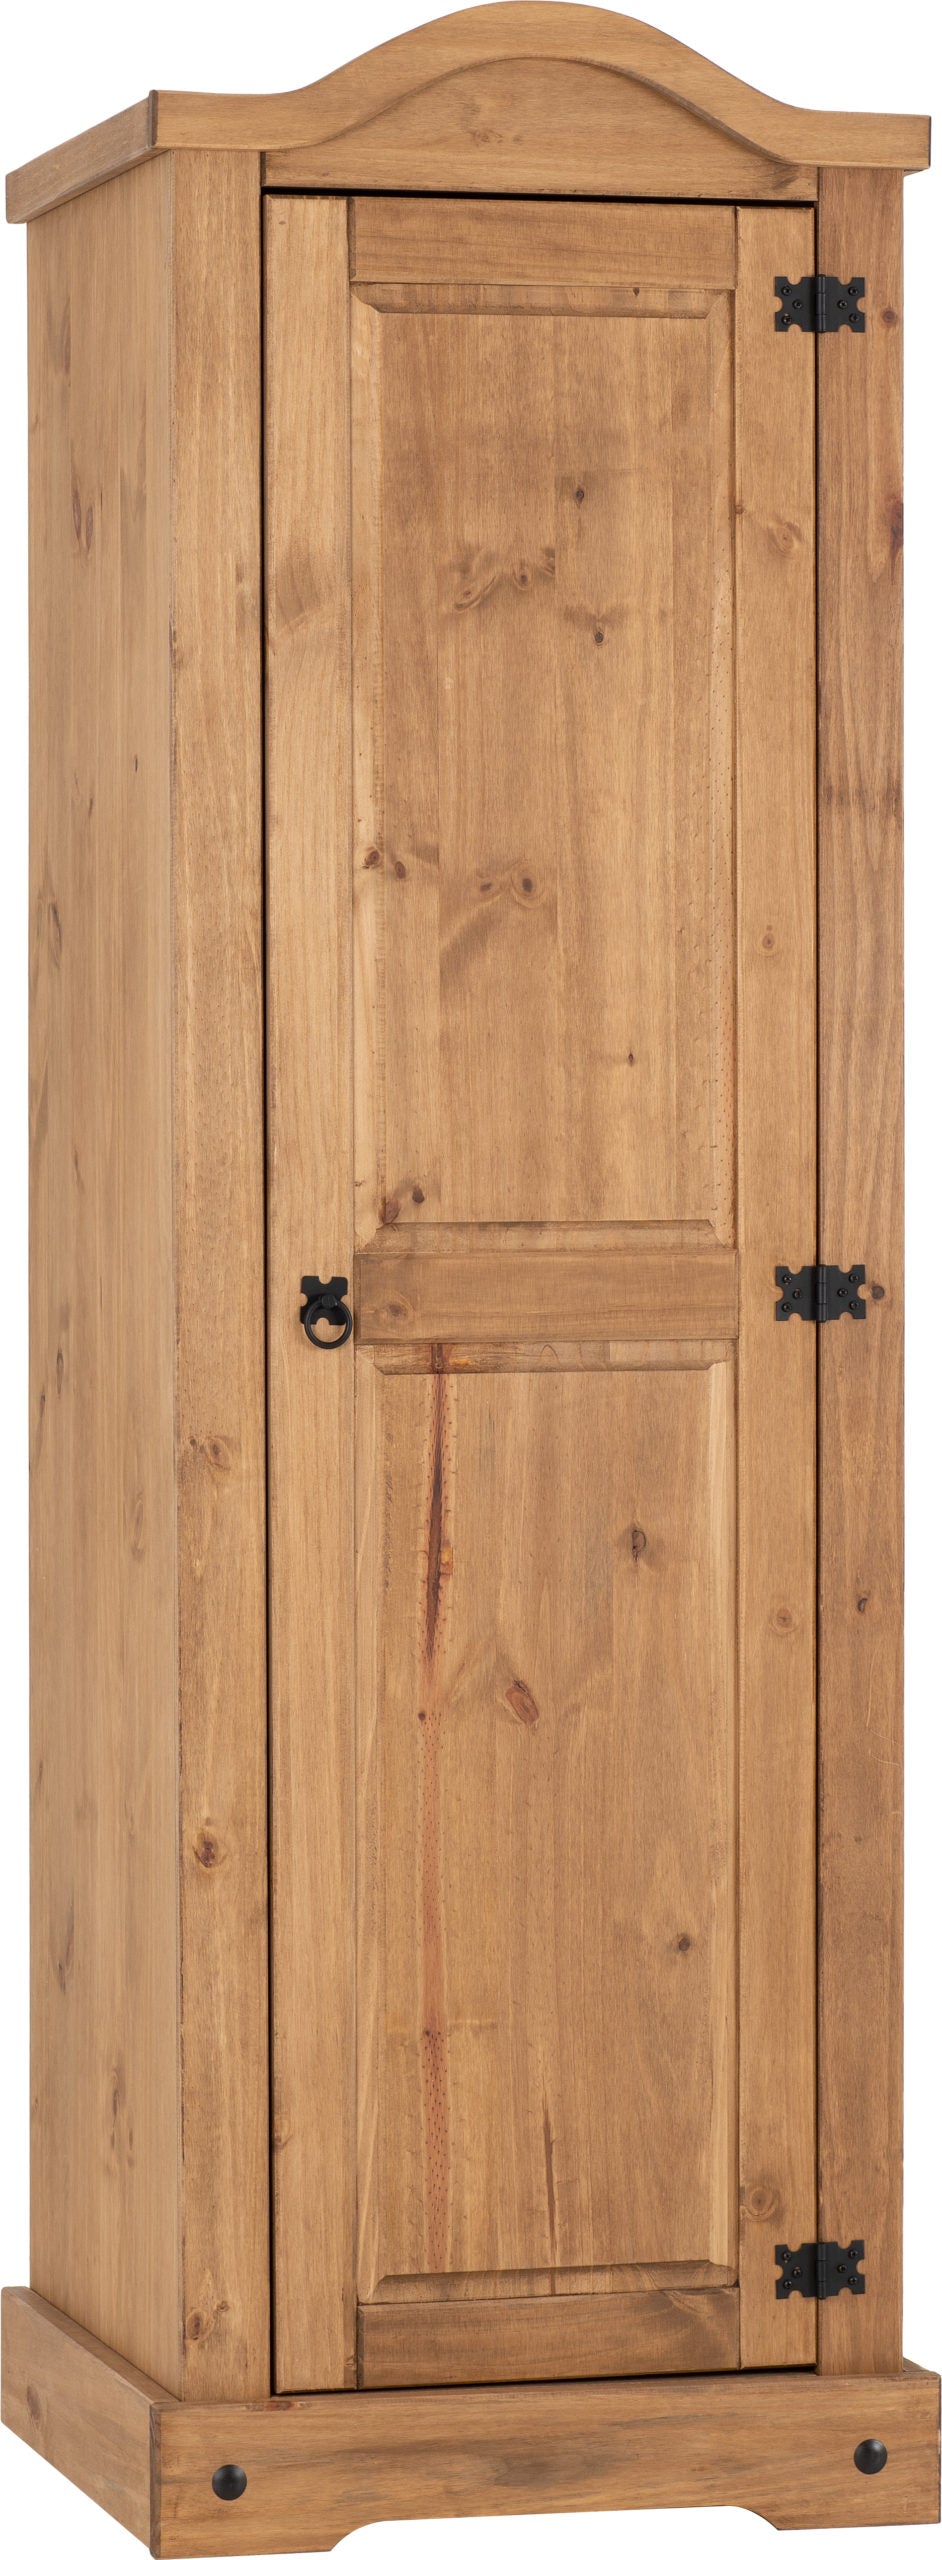 Corona 1 Door Wardrobe Distressed Waxed Pine